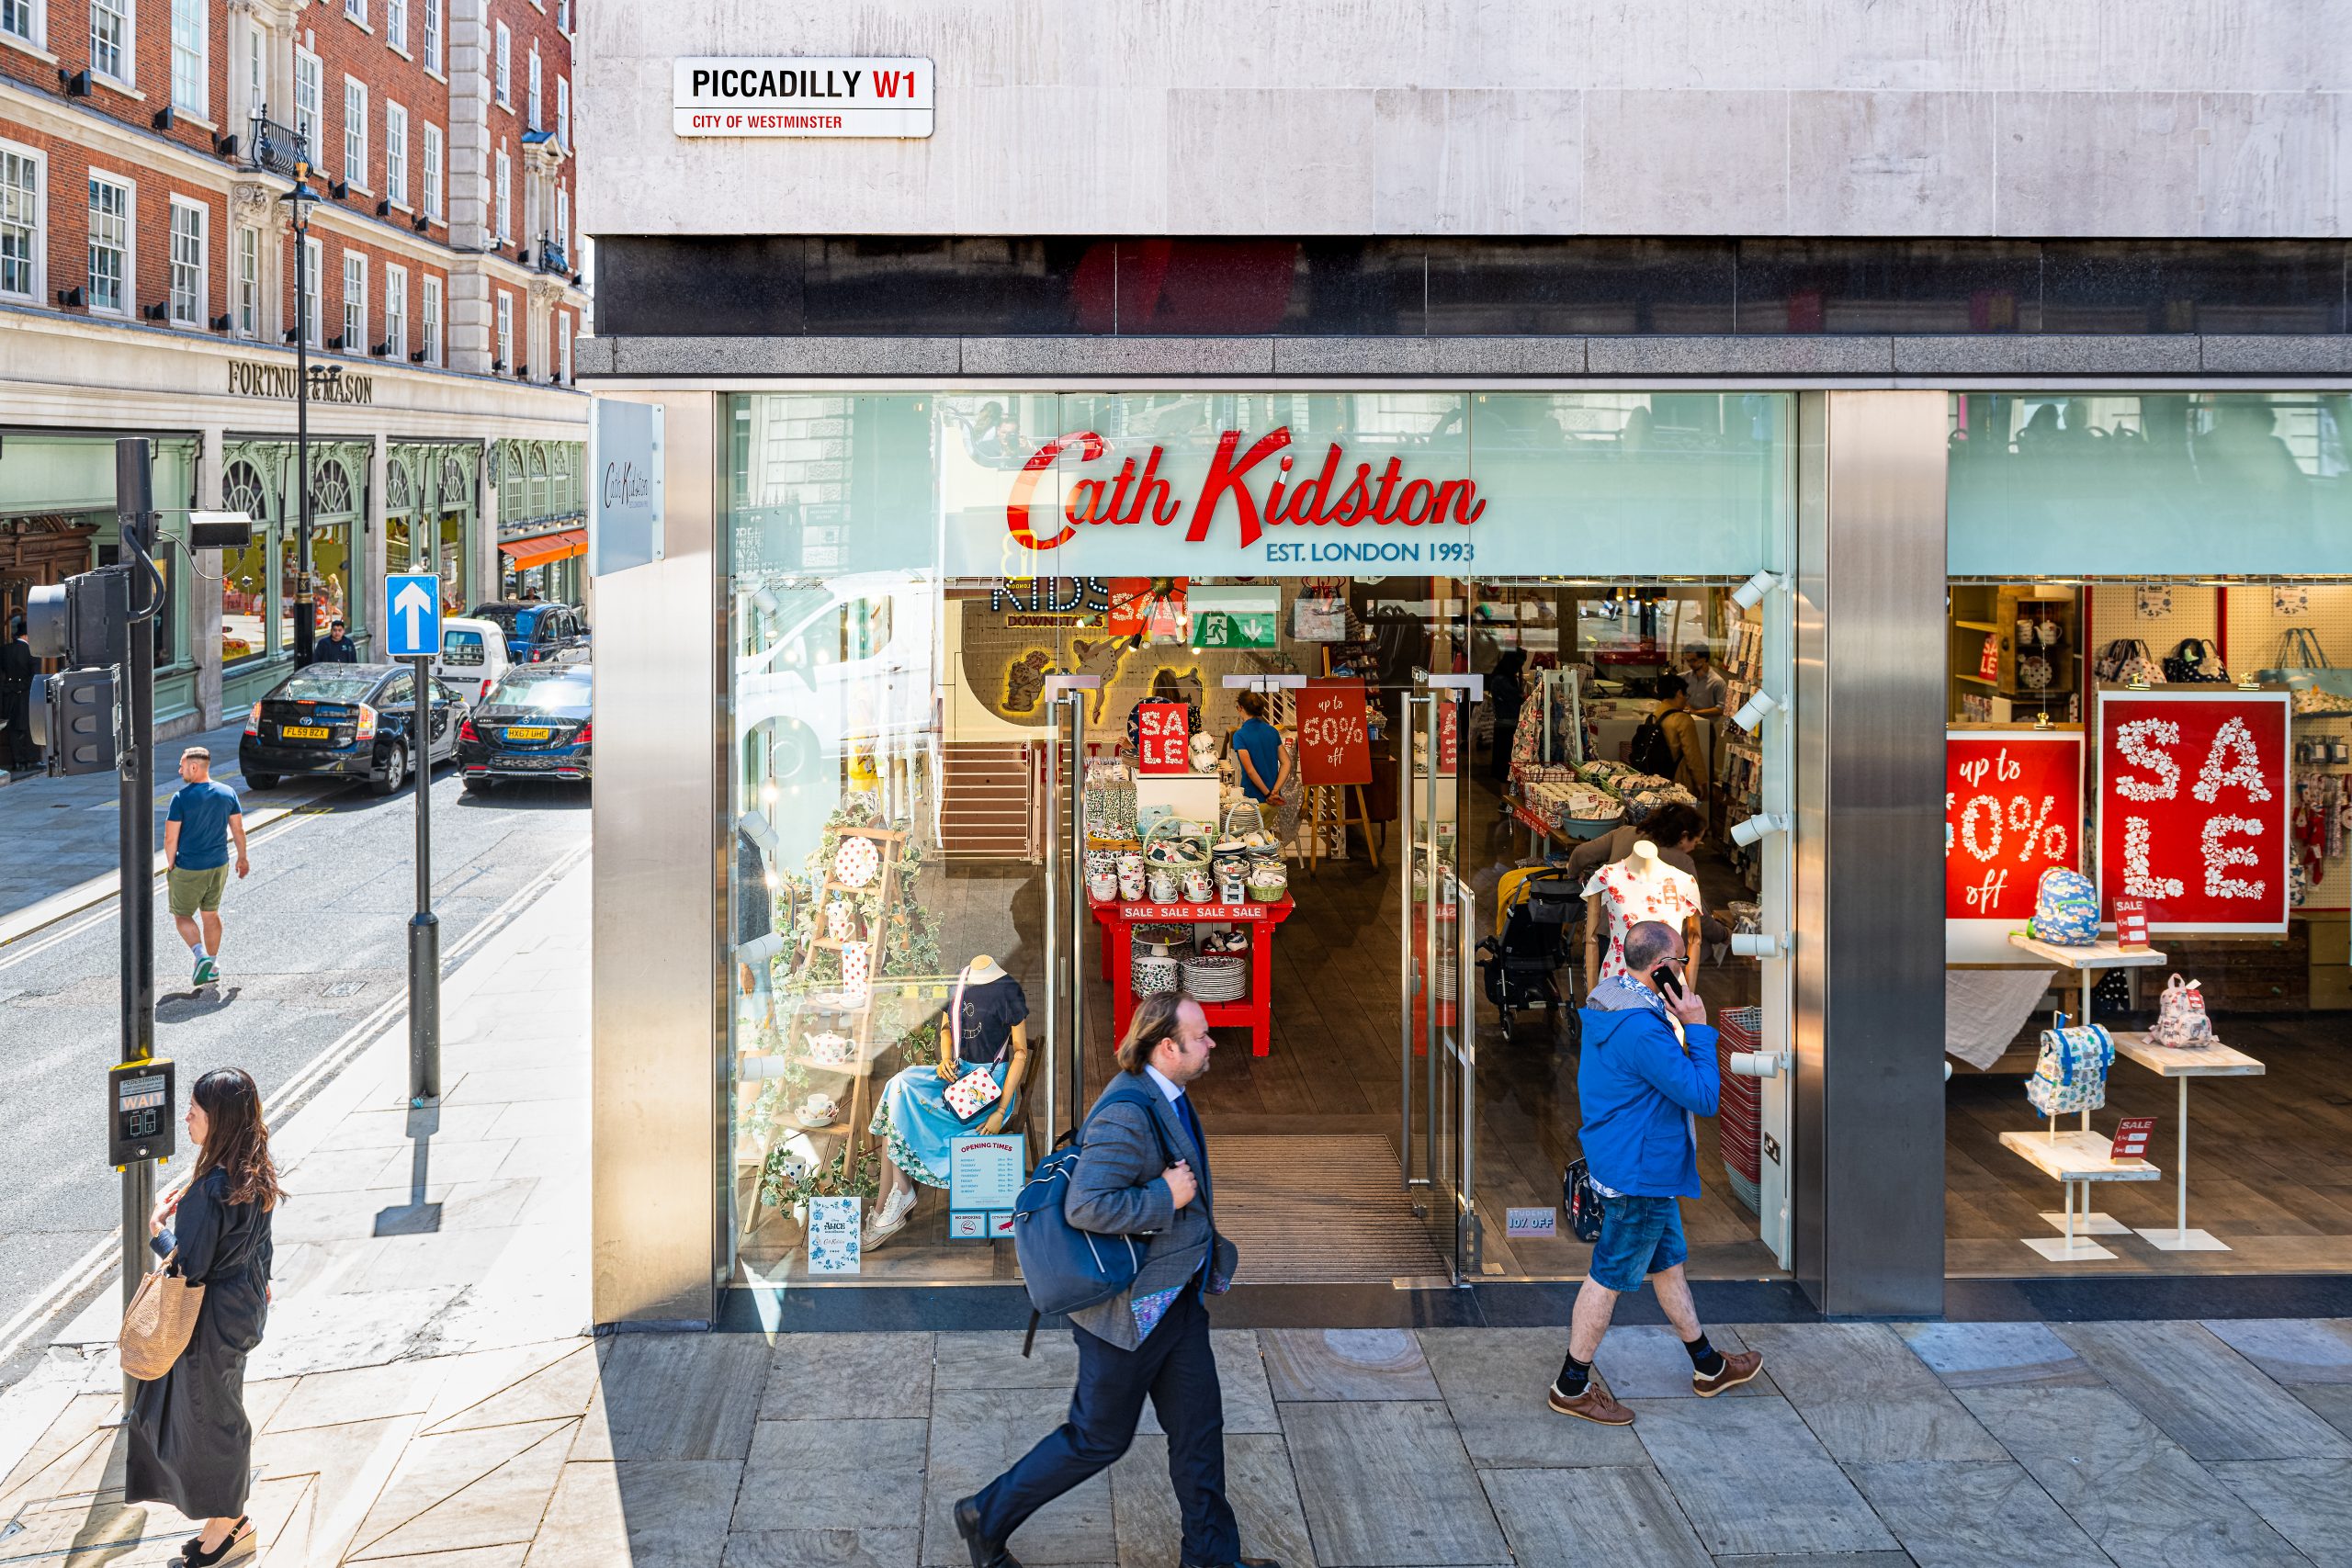 cath kidston stores in london uk